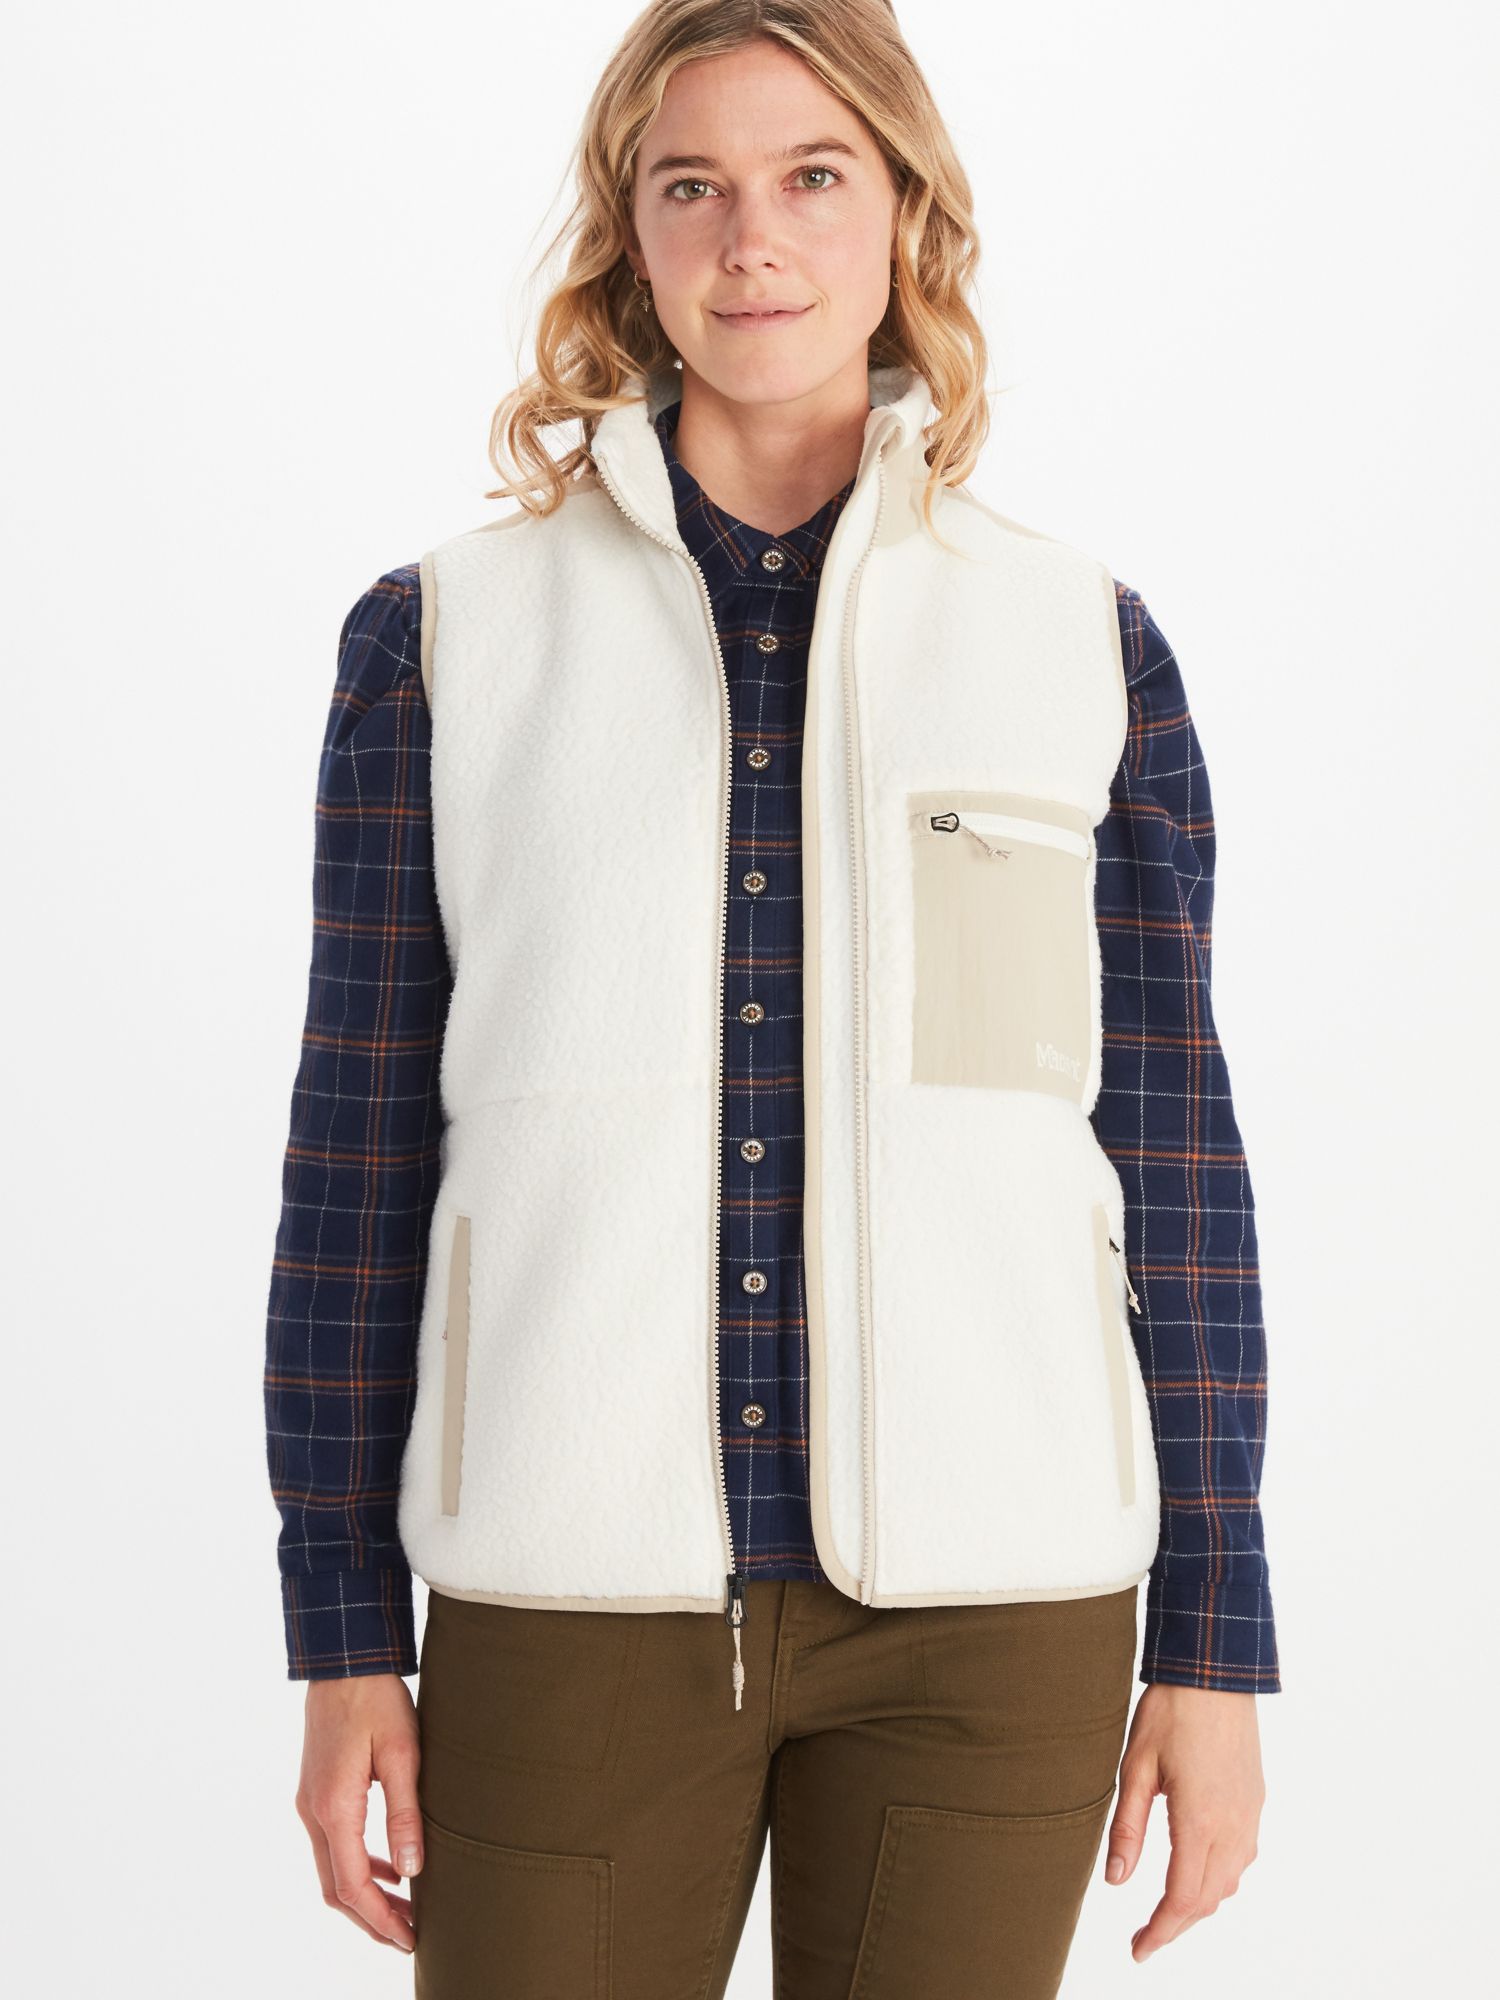 Women's Wiley Polartec® Sherpa Fleece Vest